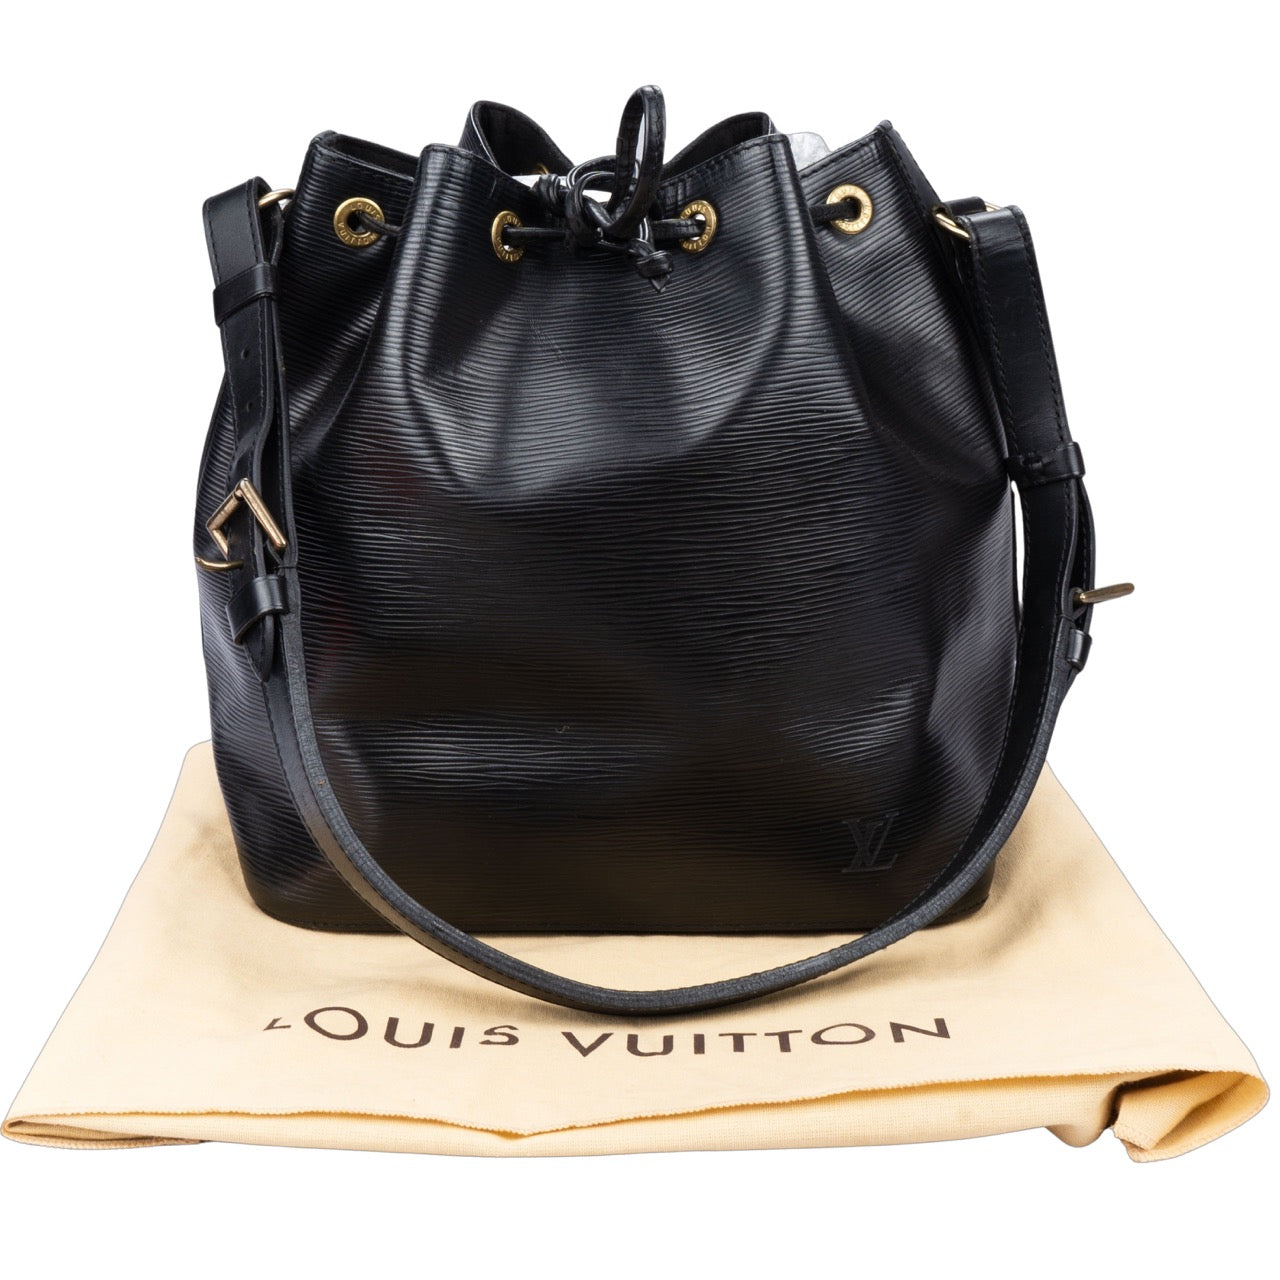 Louis Vuitton Epi Leather Sac Noe Petit